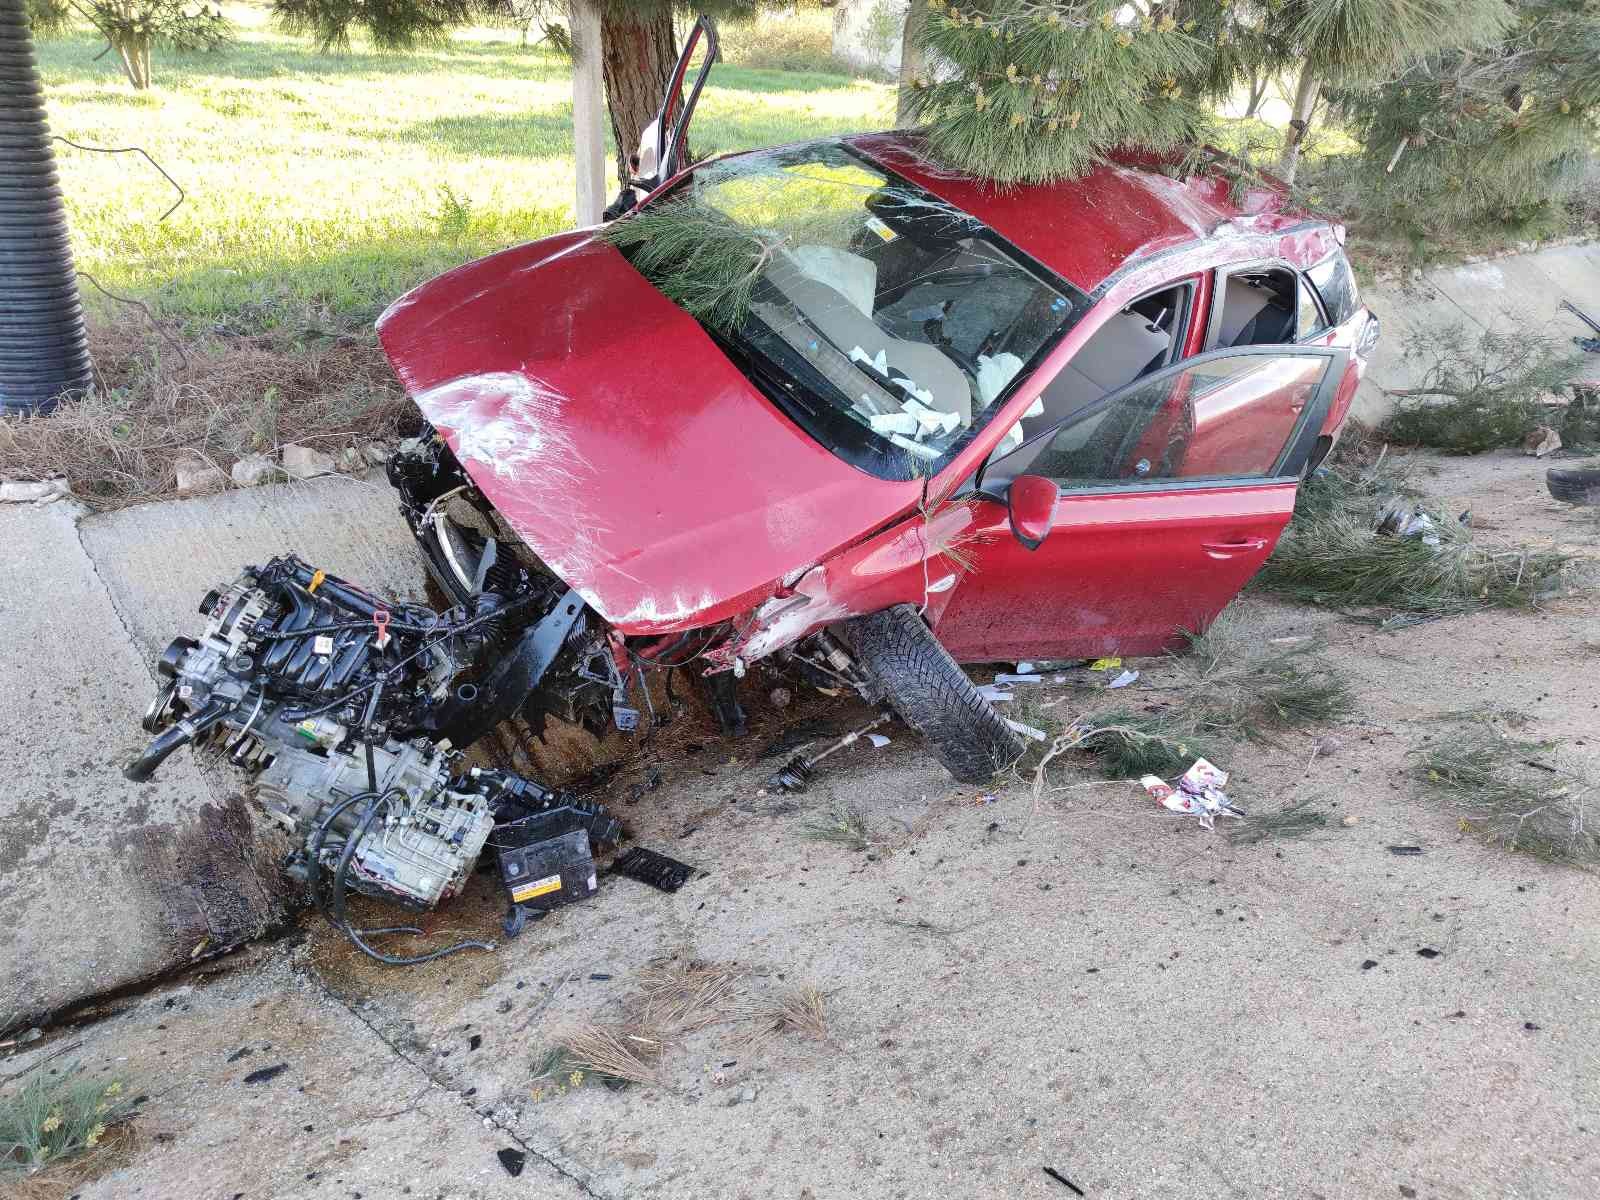 Tekirdağ’ın Malkara ilçesinde menfeze çarpan otomobilin ön kısmı paramparça oldu. Kazadan sürücü yaralı olarak kurtuldu. Kaza, sabah saatlerinde ...